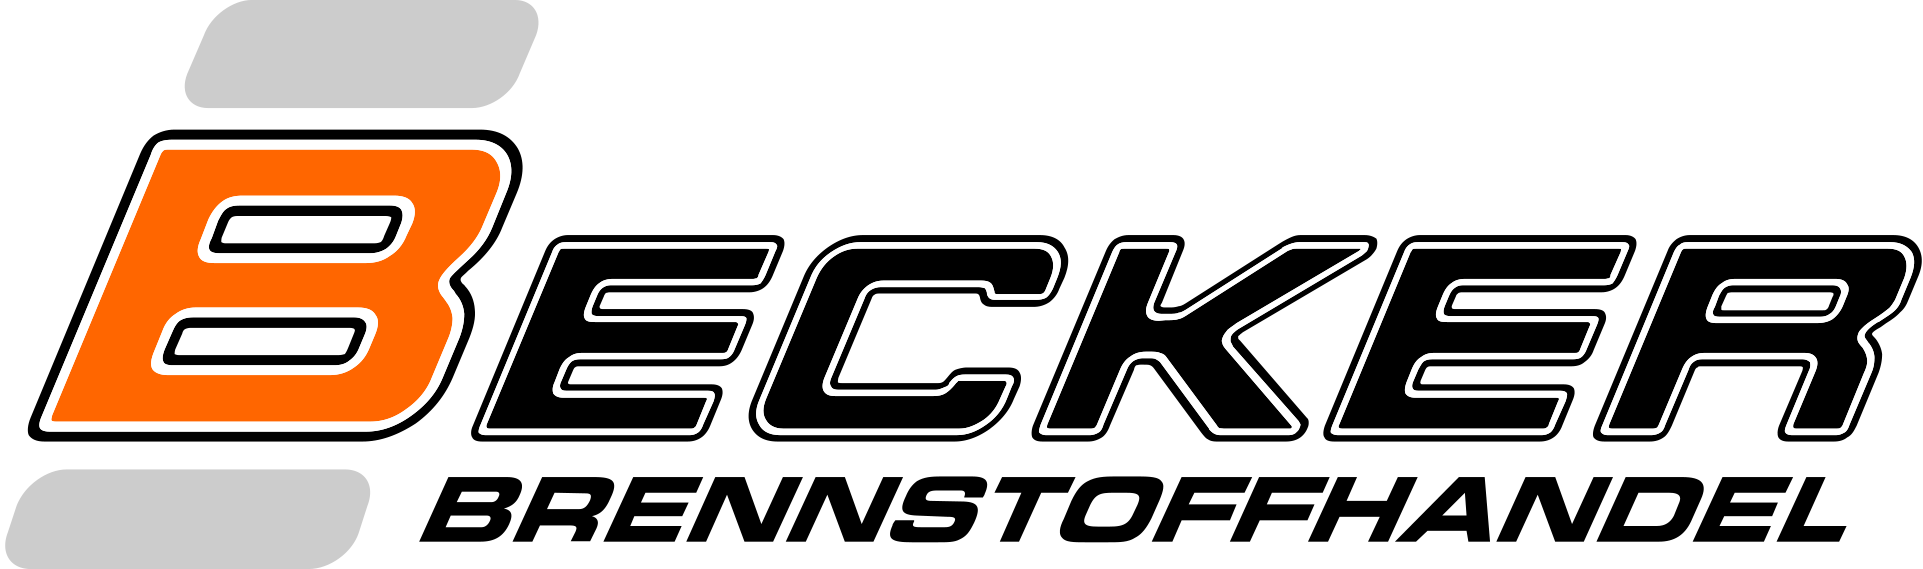 Logo Becker Brennstoffhandel